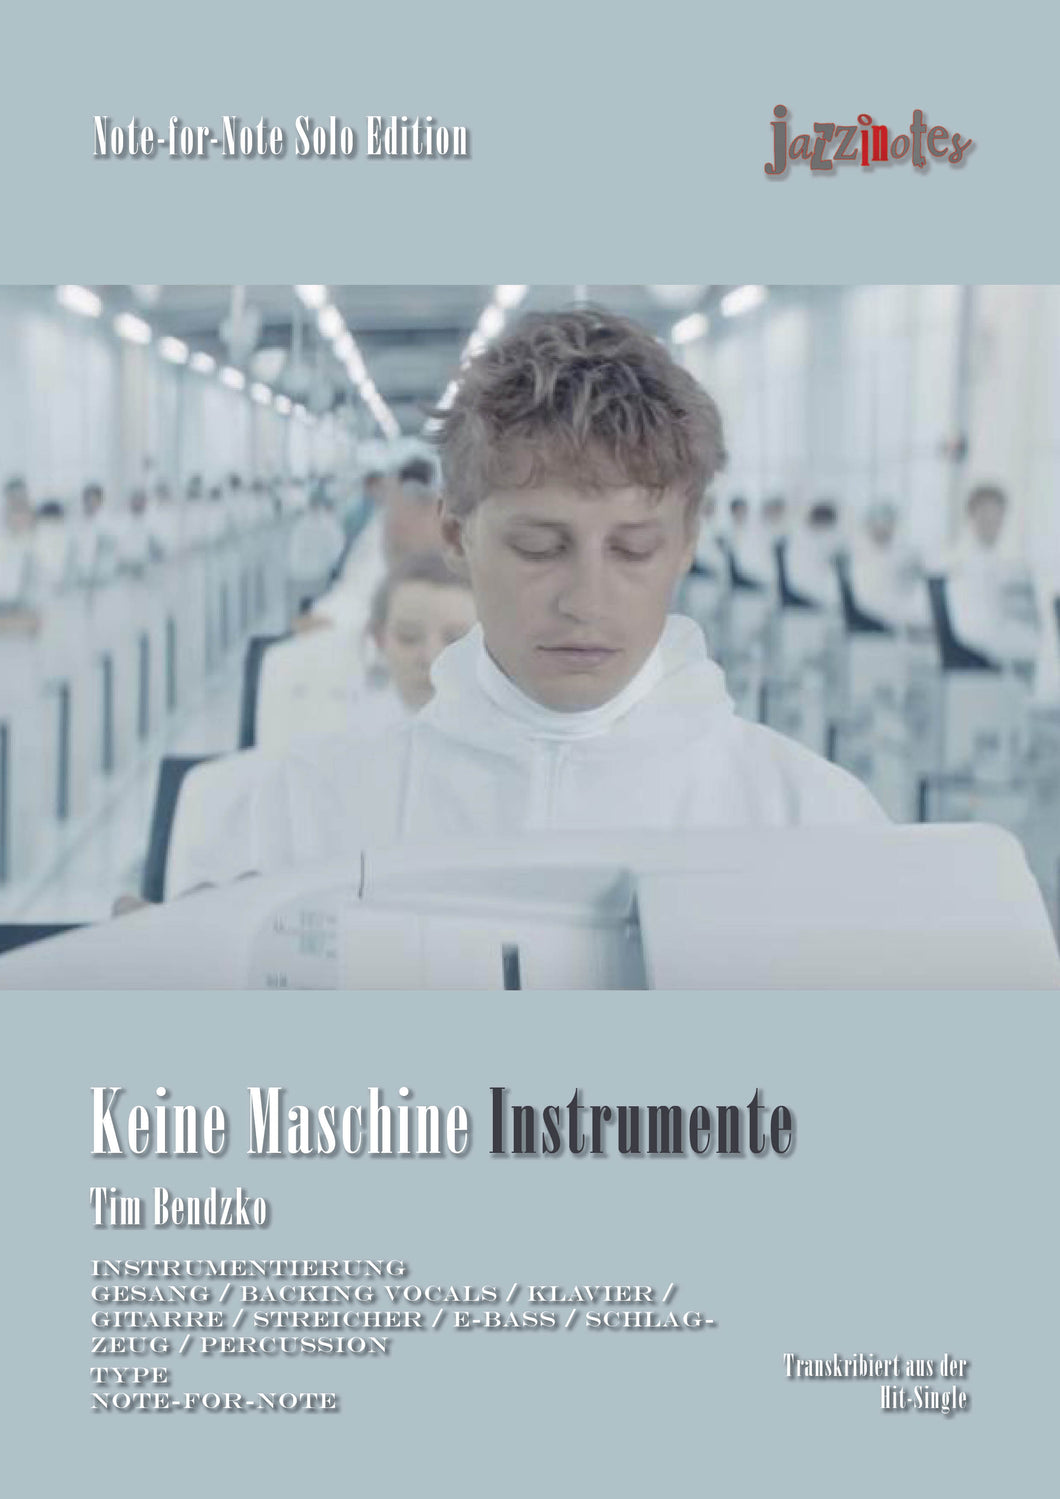 Bendzko, Tim: Keine Maschine Instruments - Sheet Music Download